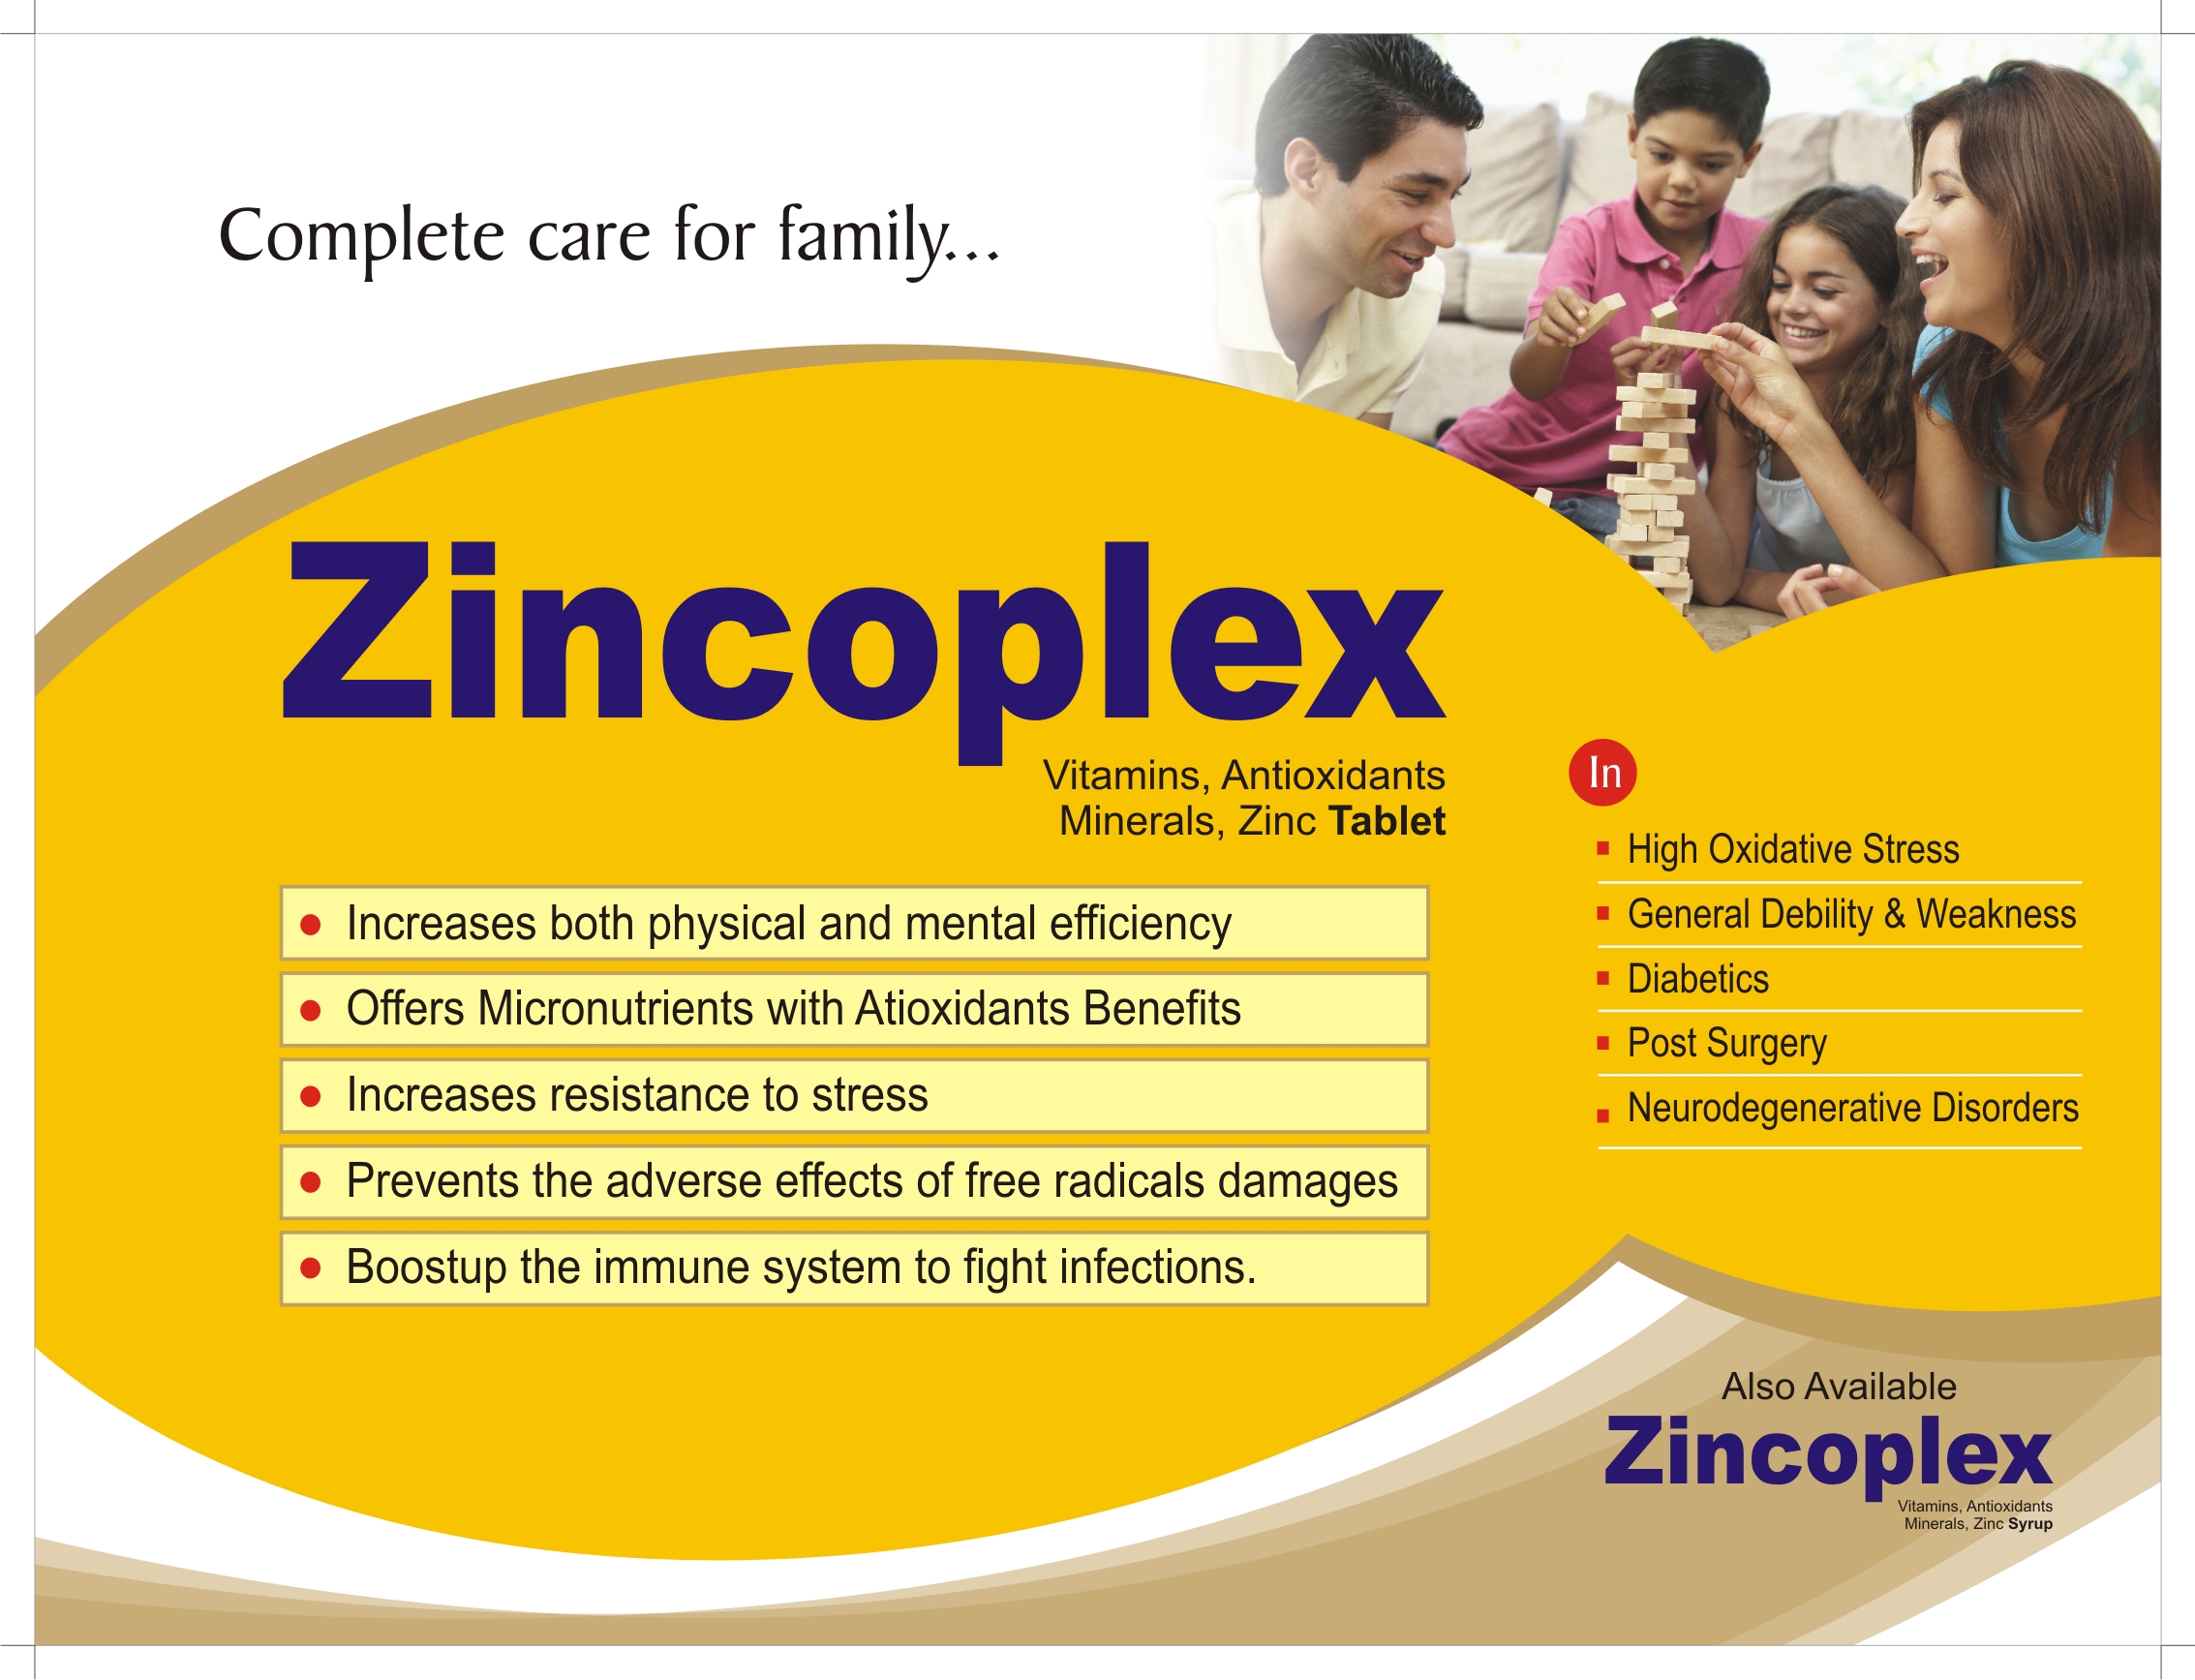 Zincoplex